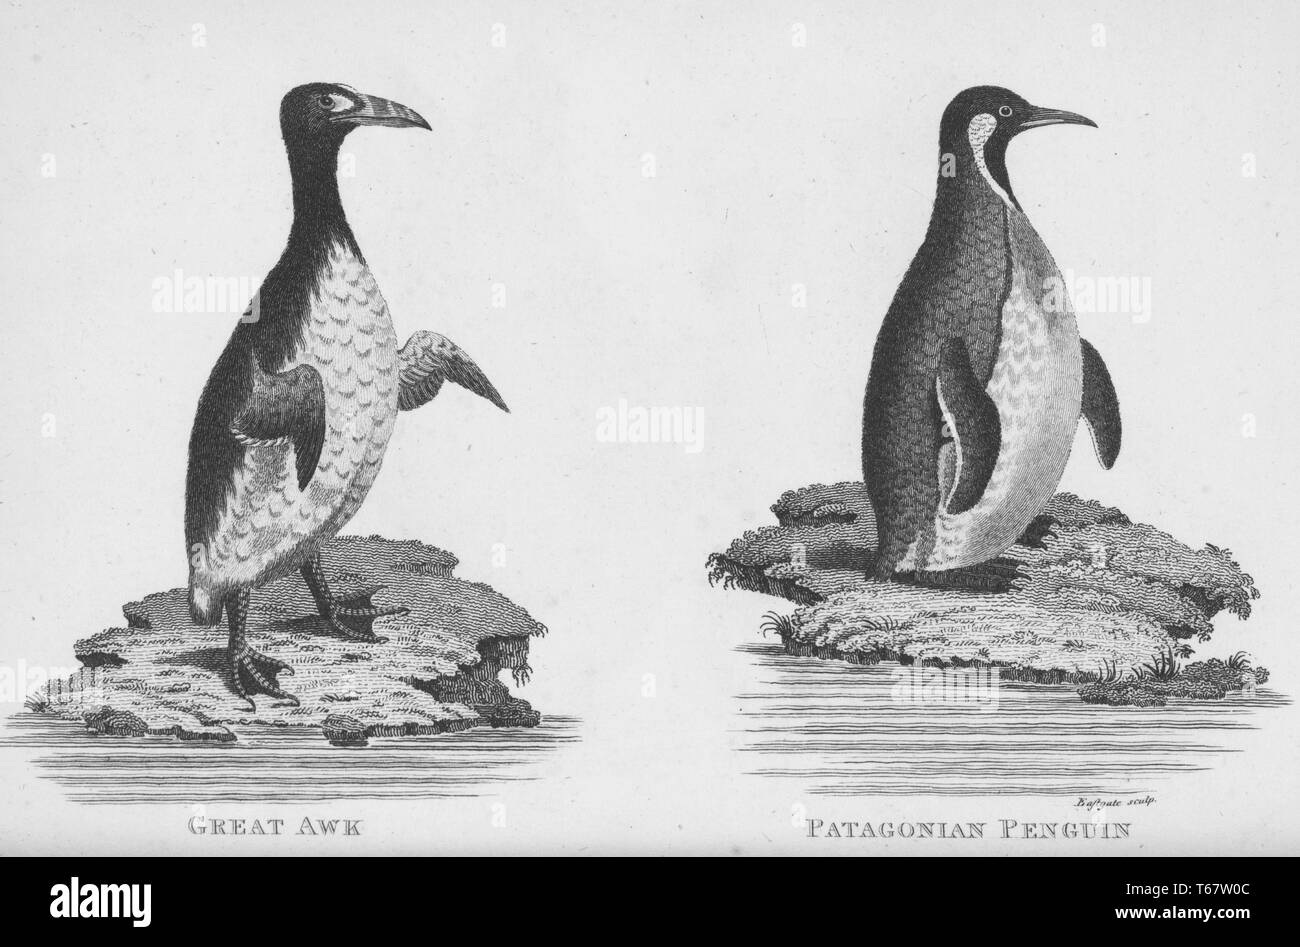 Zwei Stiche aus einem Buch über die zoologische Vorlesungen von George Shaw an der Royal Institution von Großbritannien geliefert, Shaw war ein britischer Botaniker und Zoologe, der mehrere Bücher veröffentlicht, das Bild links zeigt einen Riesenalk, ein flugunfähiger Vogel und das einzige moderne Pinguin, das Bild auf der rechten Seite zeigt ein Patagonischer Pinguin der Pinguin die Tierarten, Südamerika und werden als eine bedrohte Art, 1809 klassifiziert. Von der New York Public Library. Stockfoto